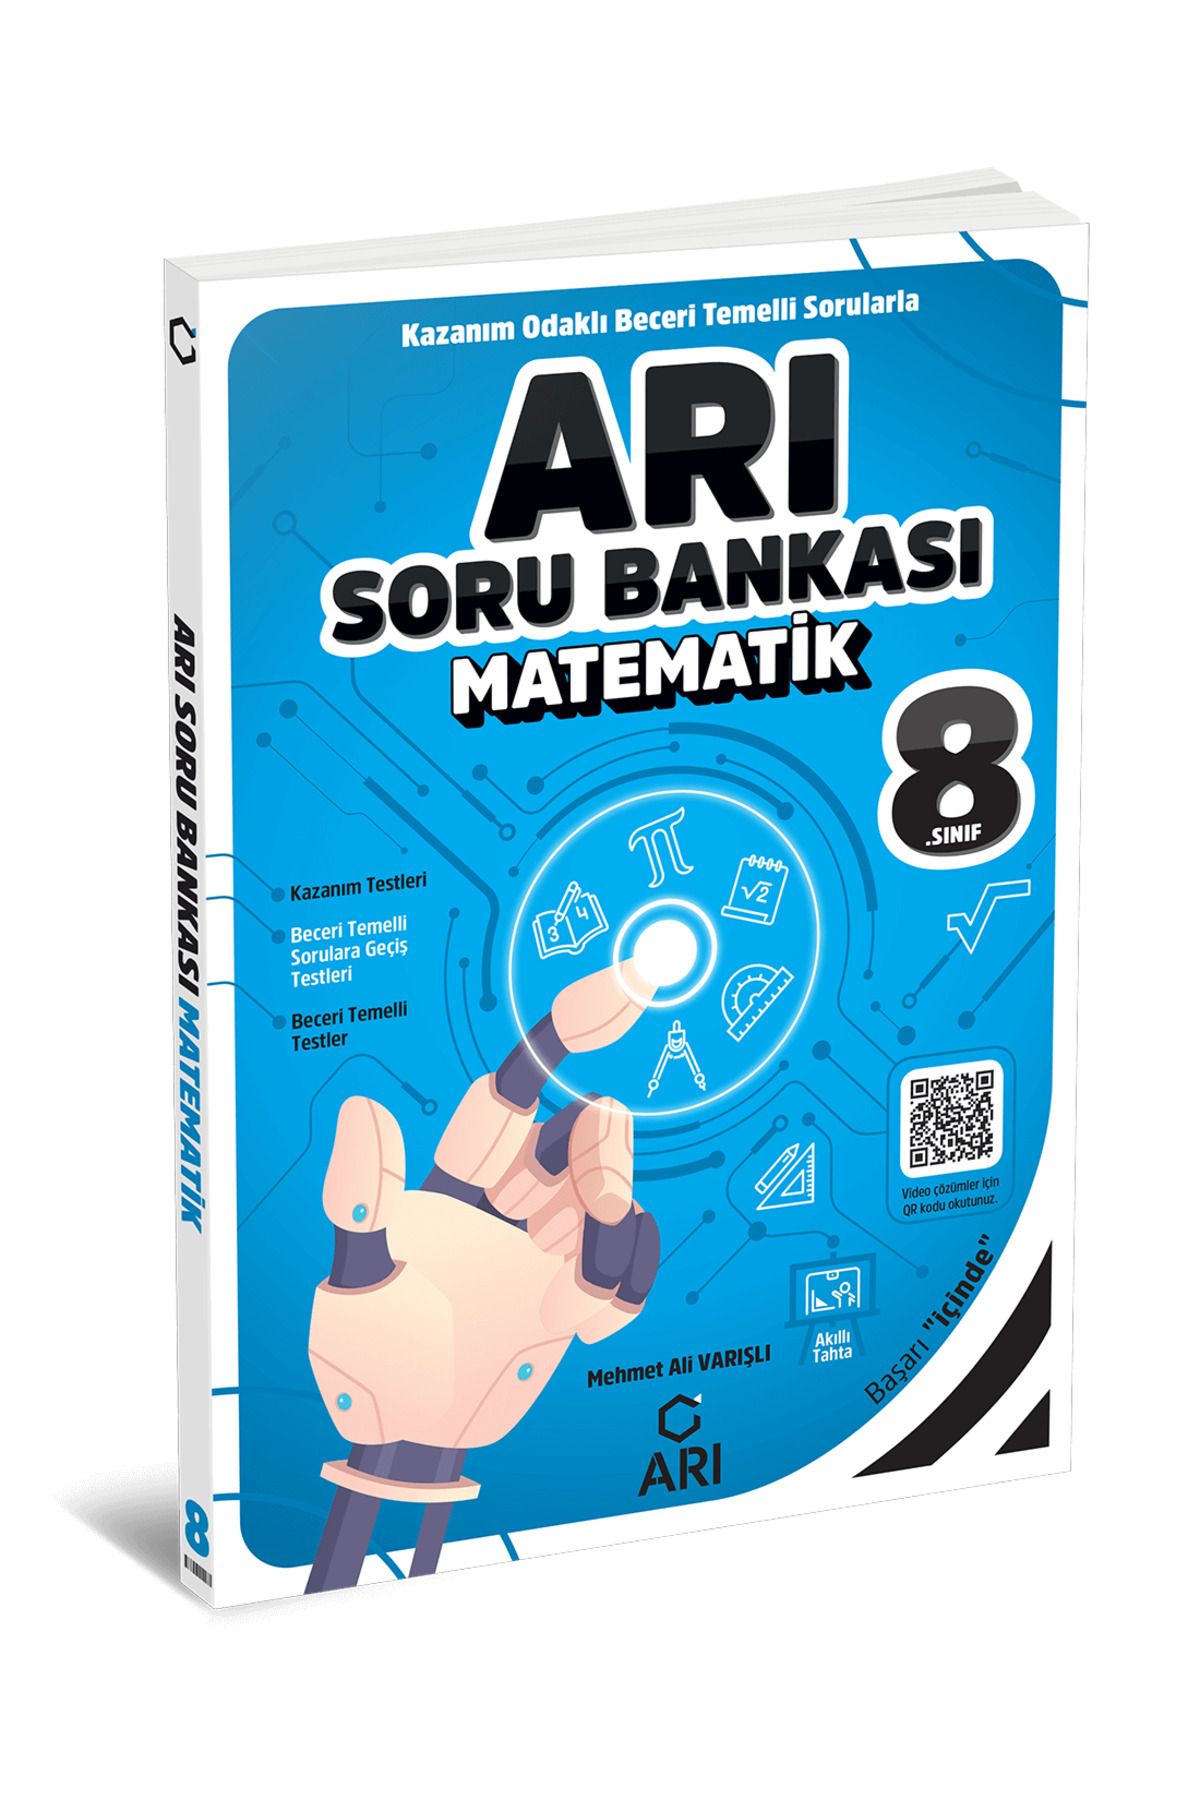 ARI Arı Yayınları 8 Sınıf Matematik Arı Soru Bankası Yeni Nesil LGS